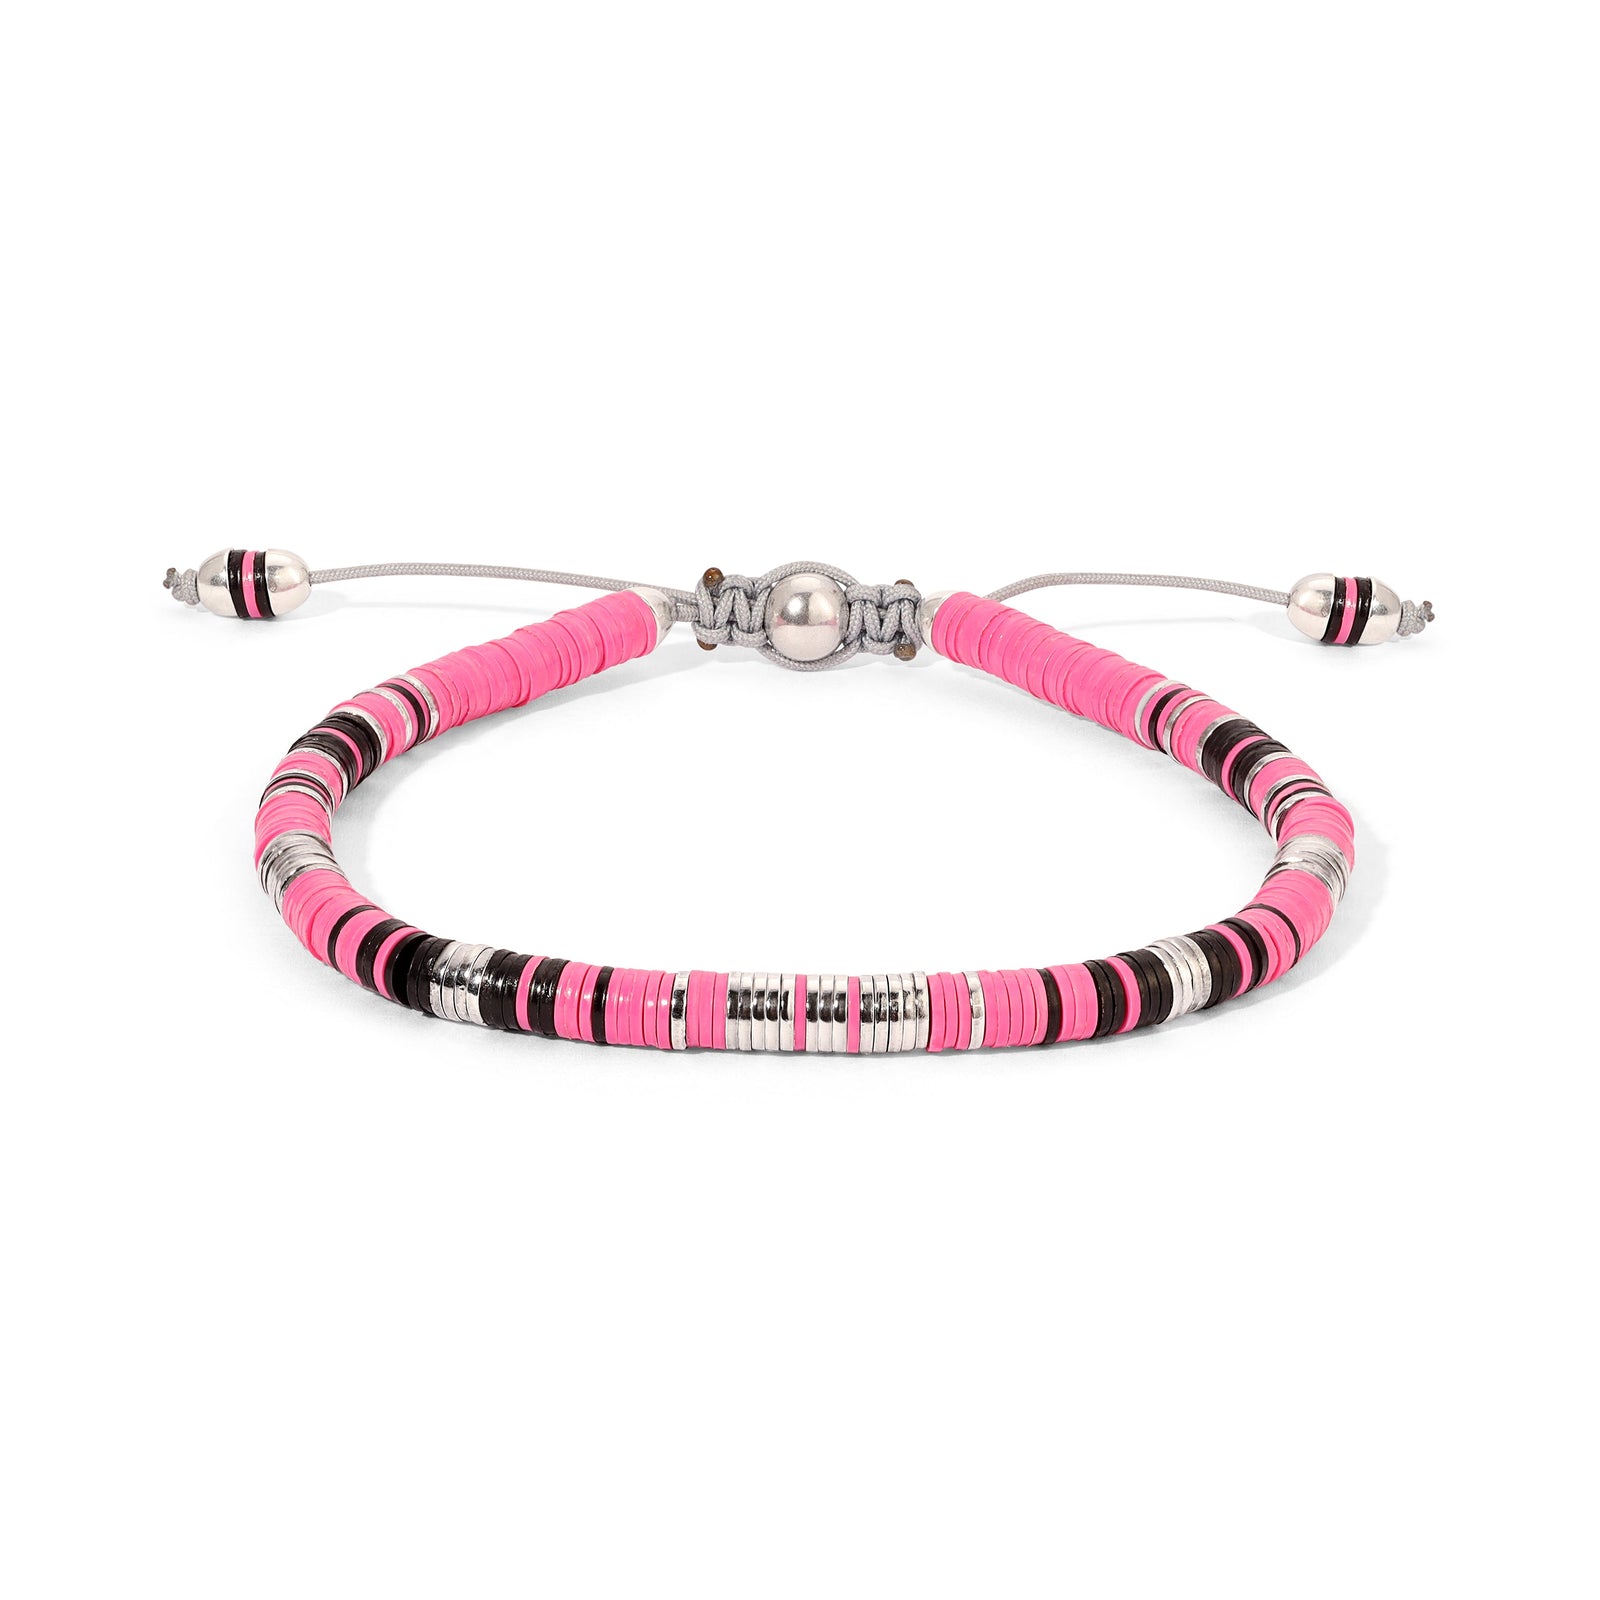 Rizon Bracelet I Hot Pink Pattern I Sterling Silver